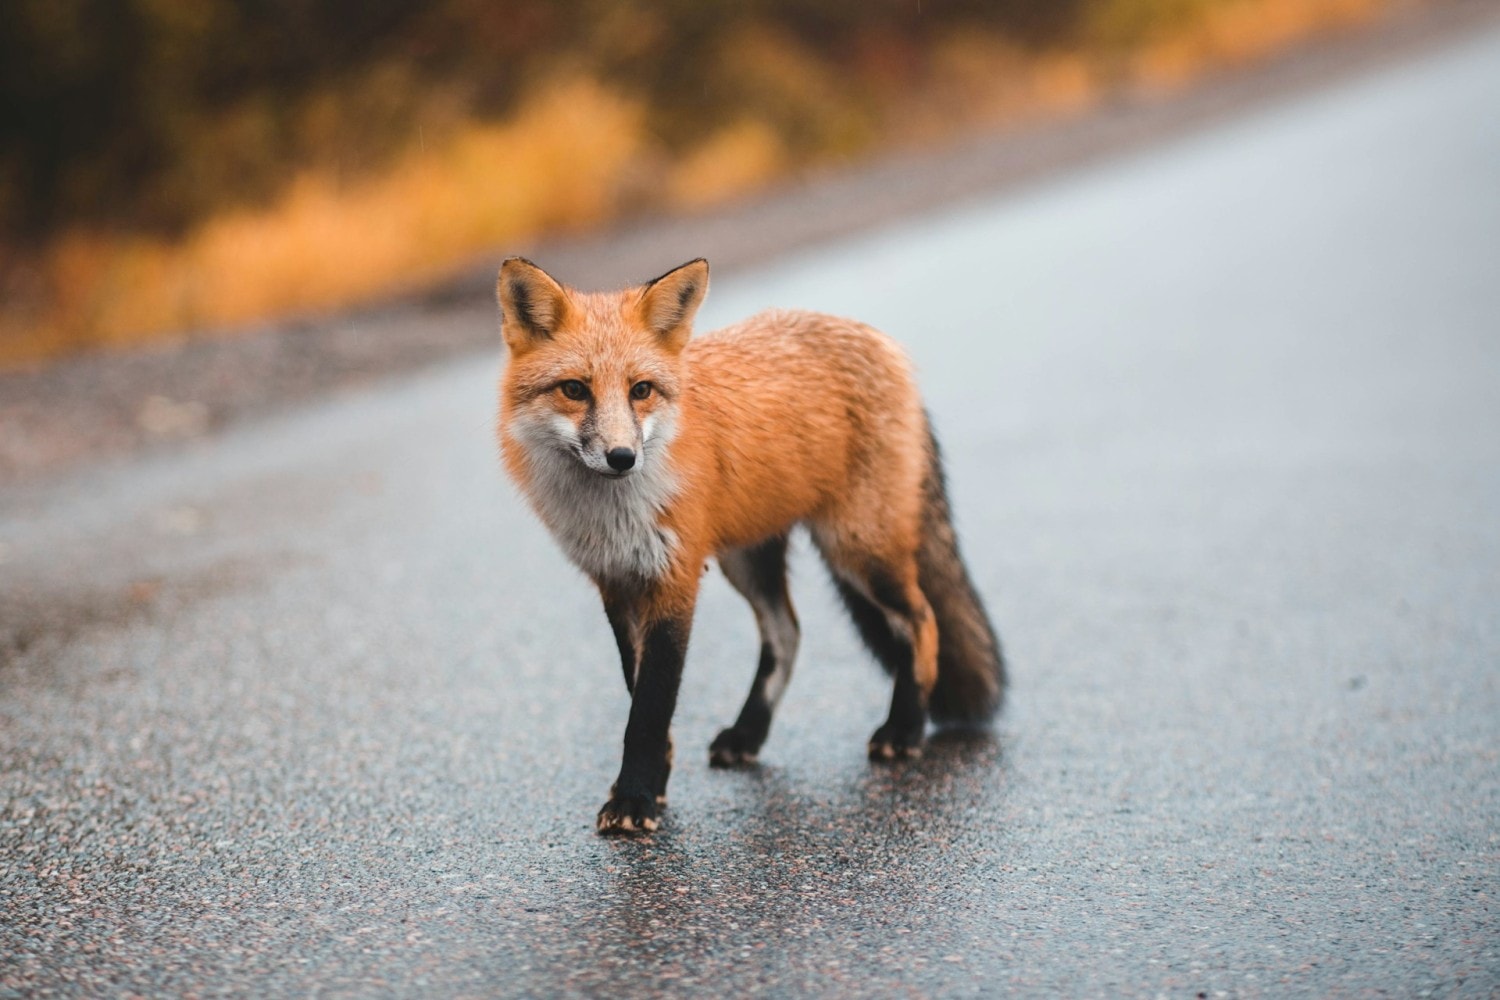 red fox walking on wet street